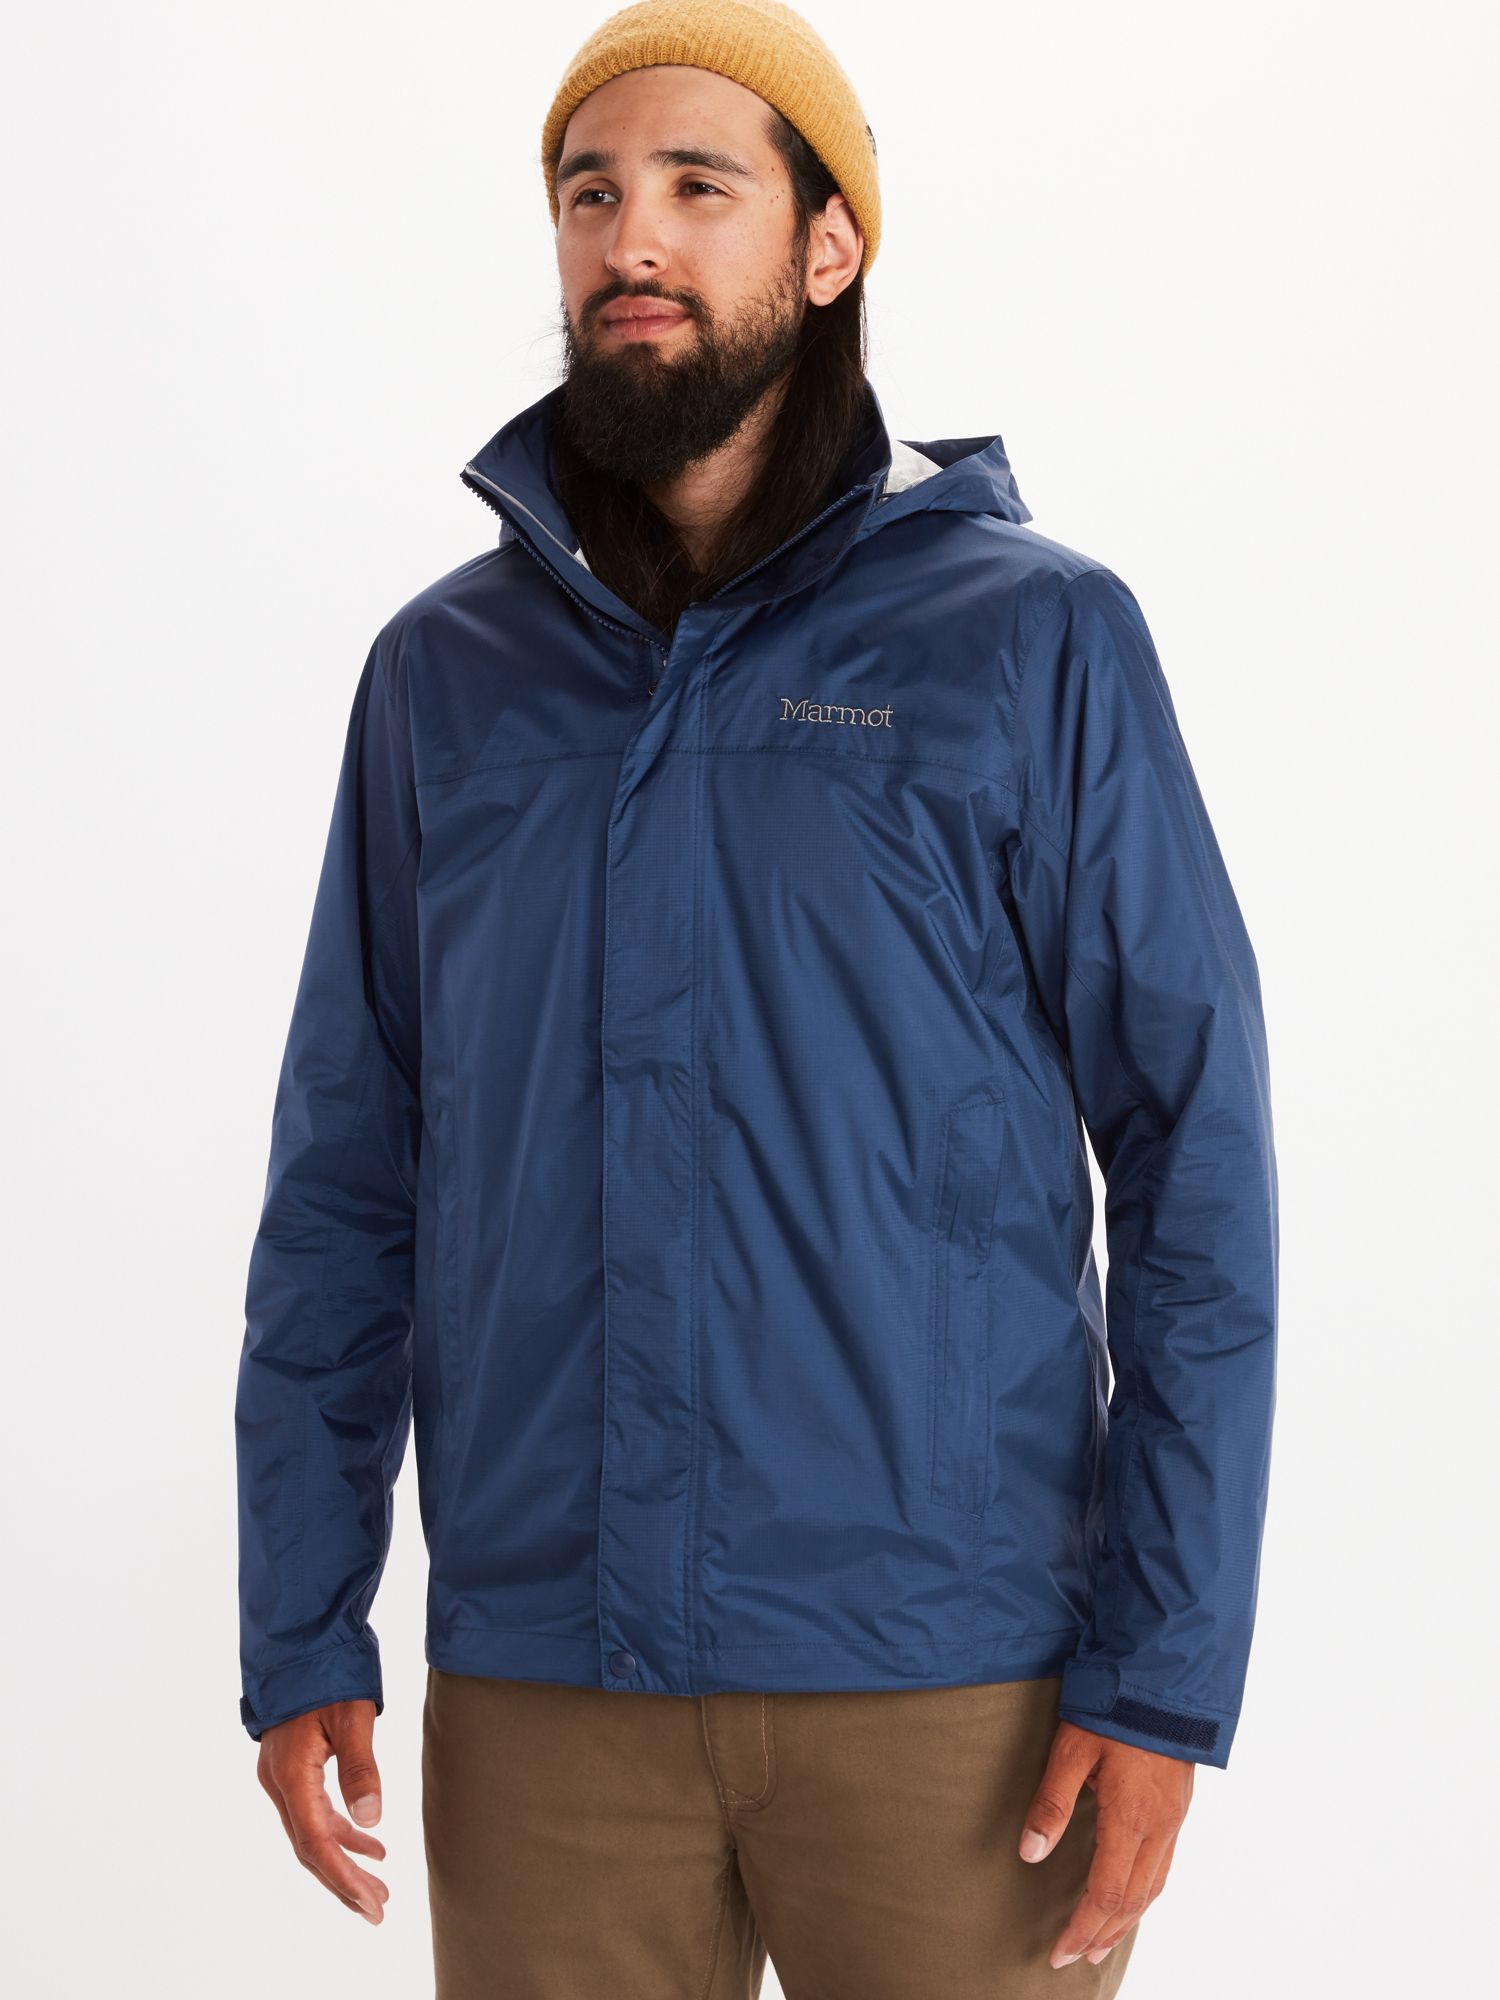 Men's PreCip Eco Jacket - Tall | Marmot